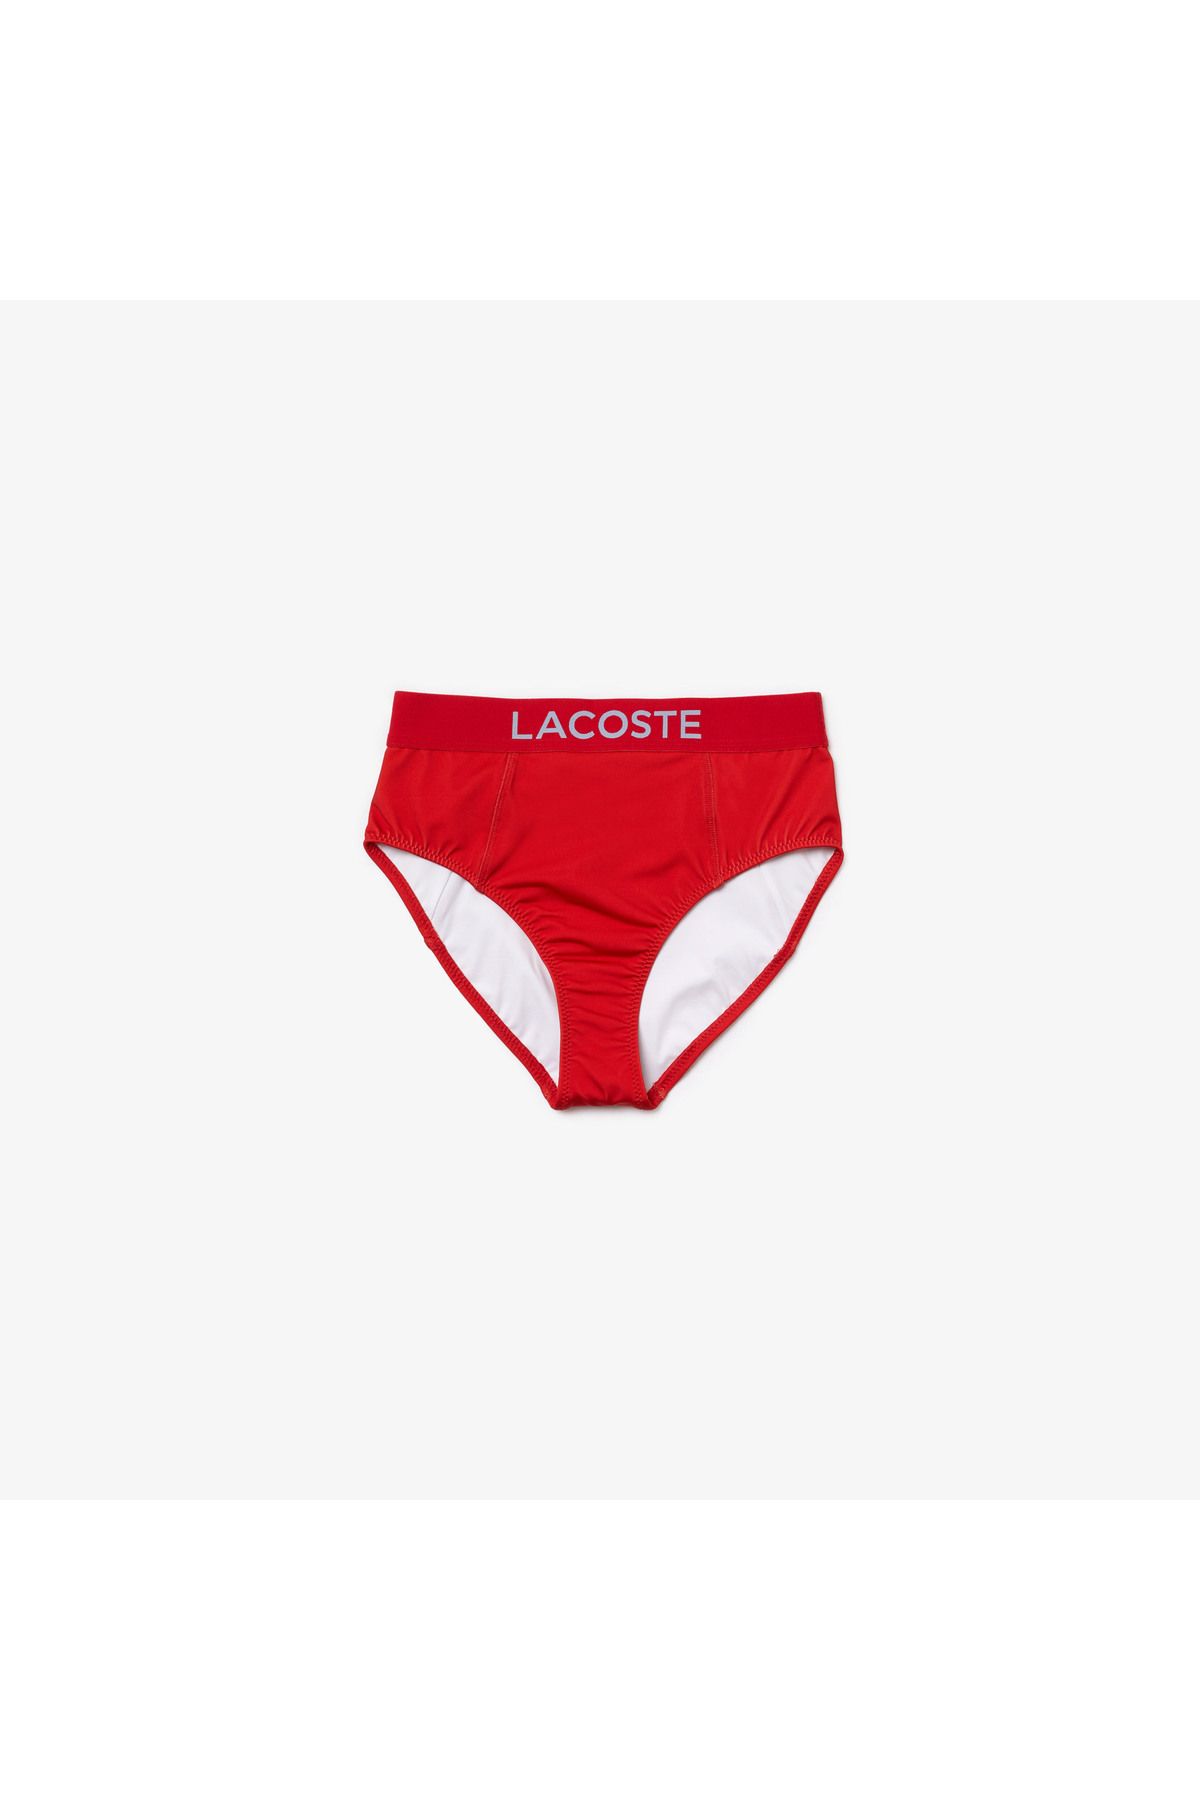 Lacoste Kadın Baskılı Kırmızı Bikini Altı